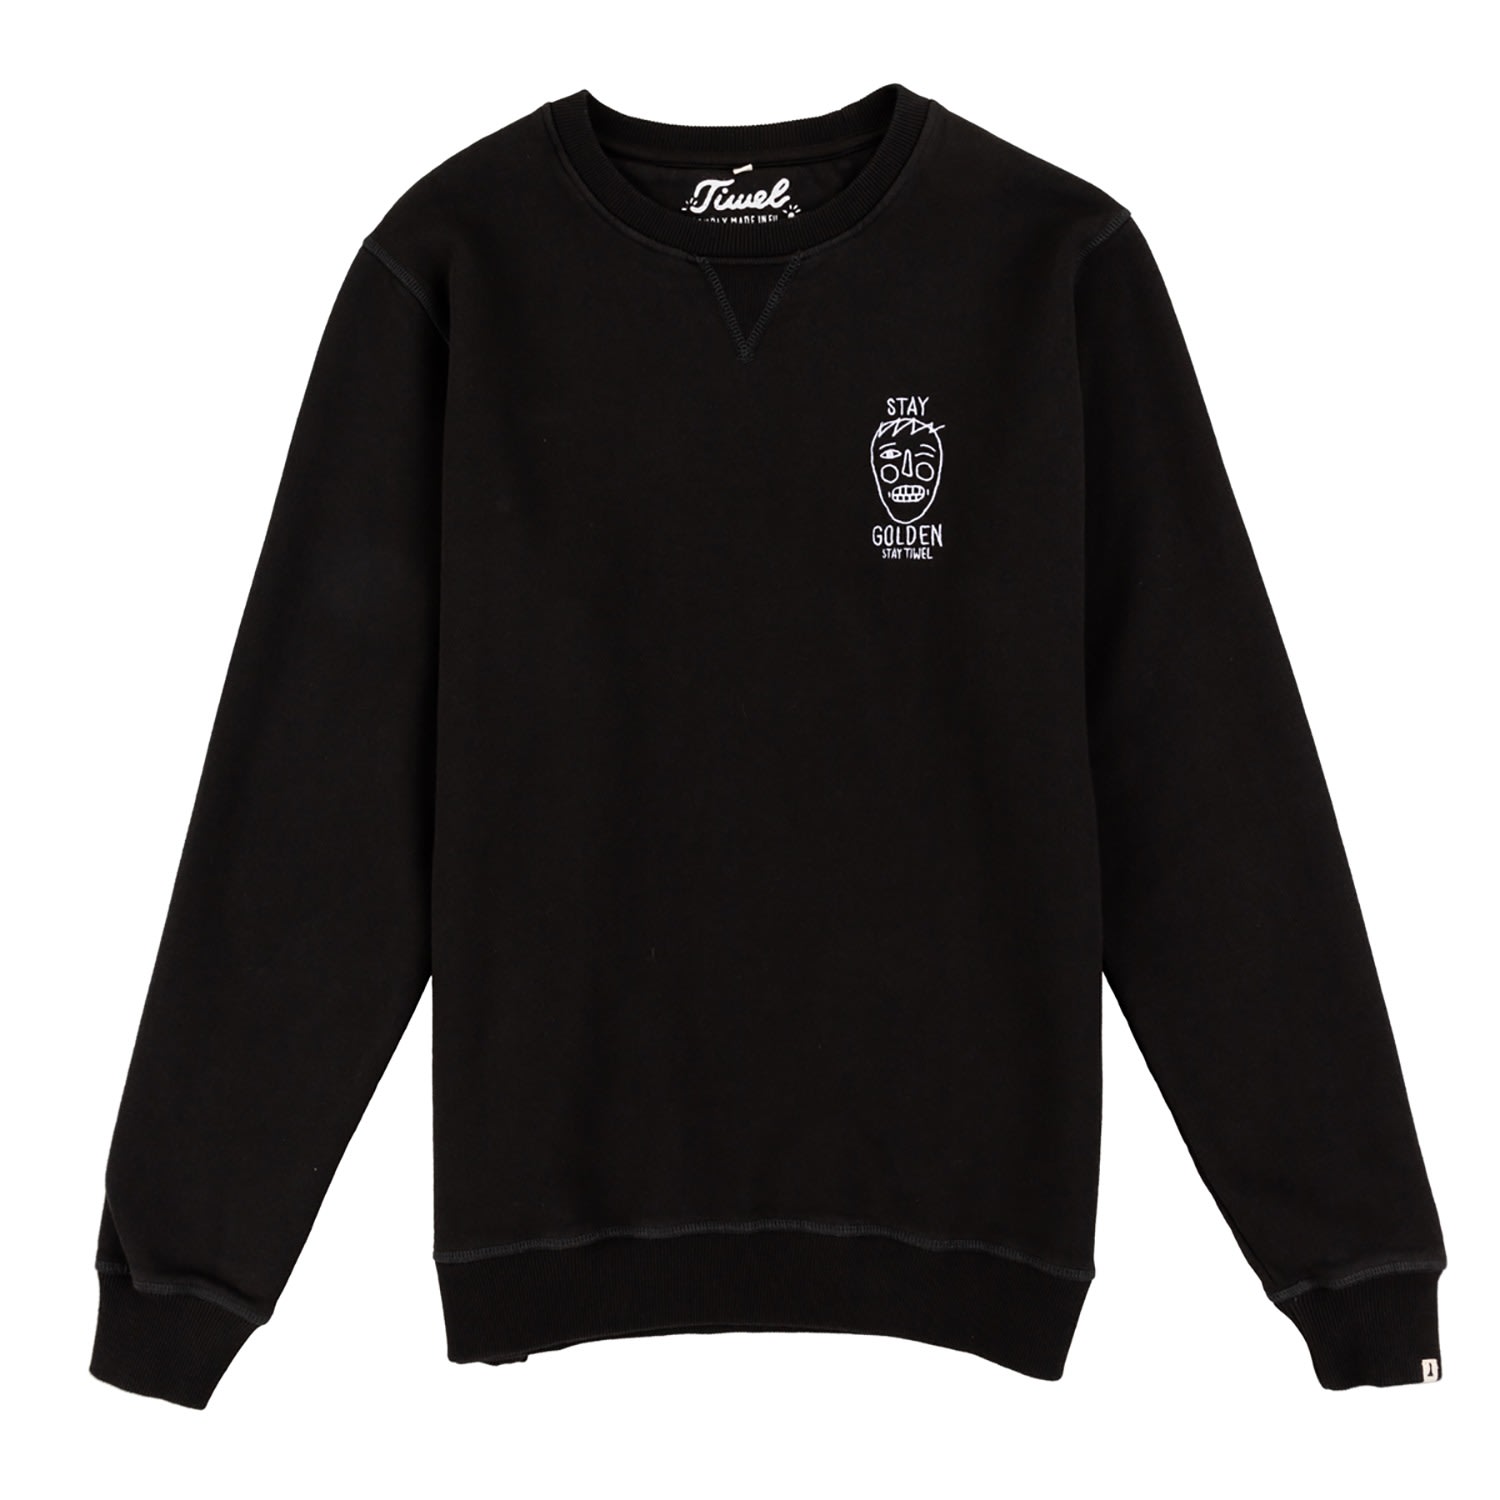 Men's Golden Sweatshirt - Black Small TIWEL